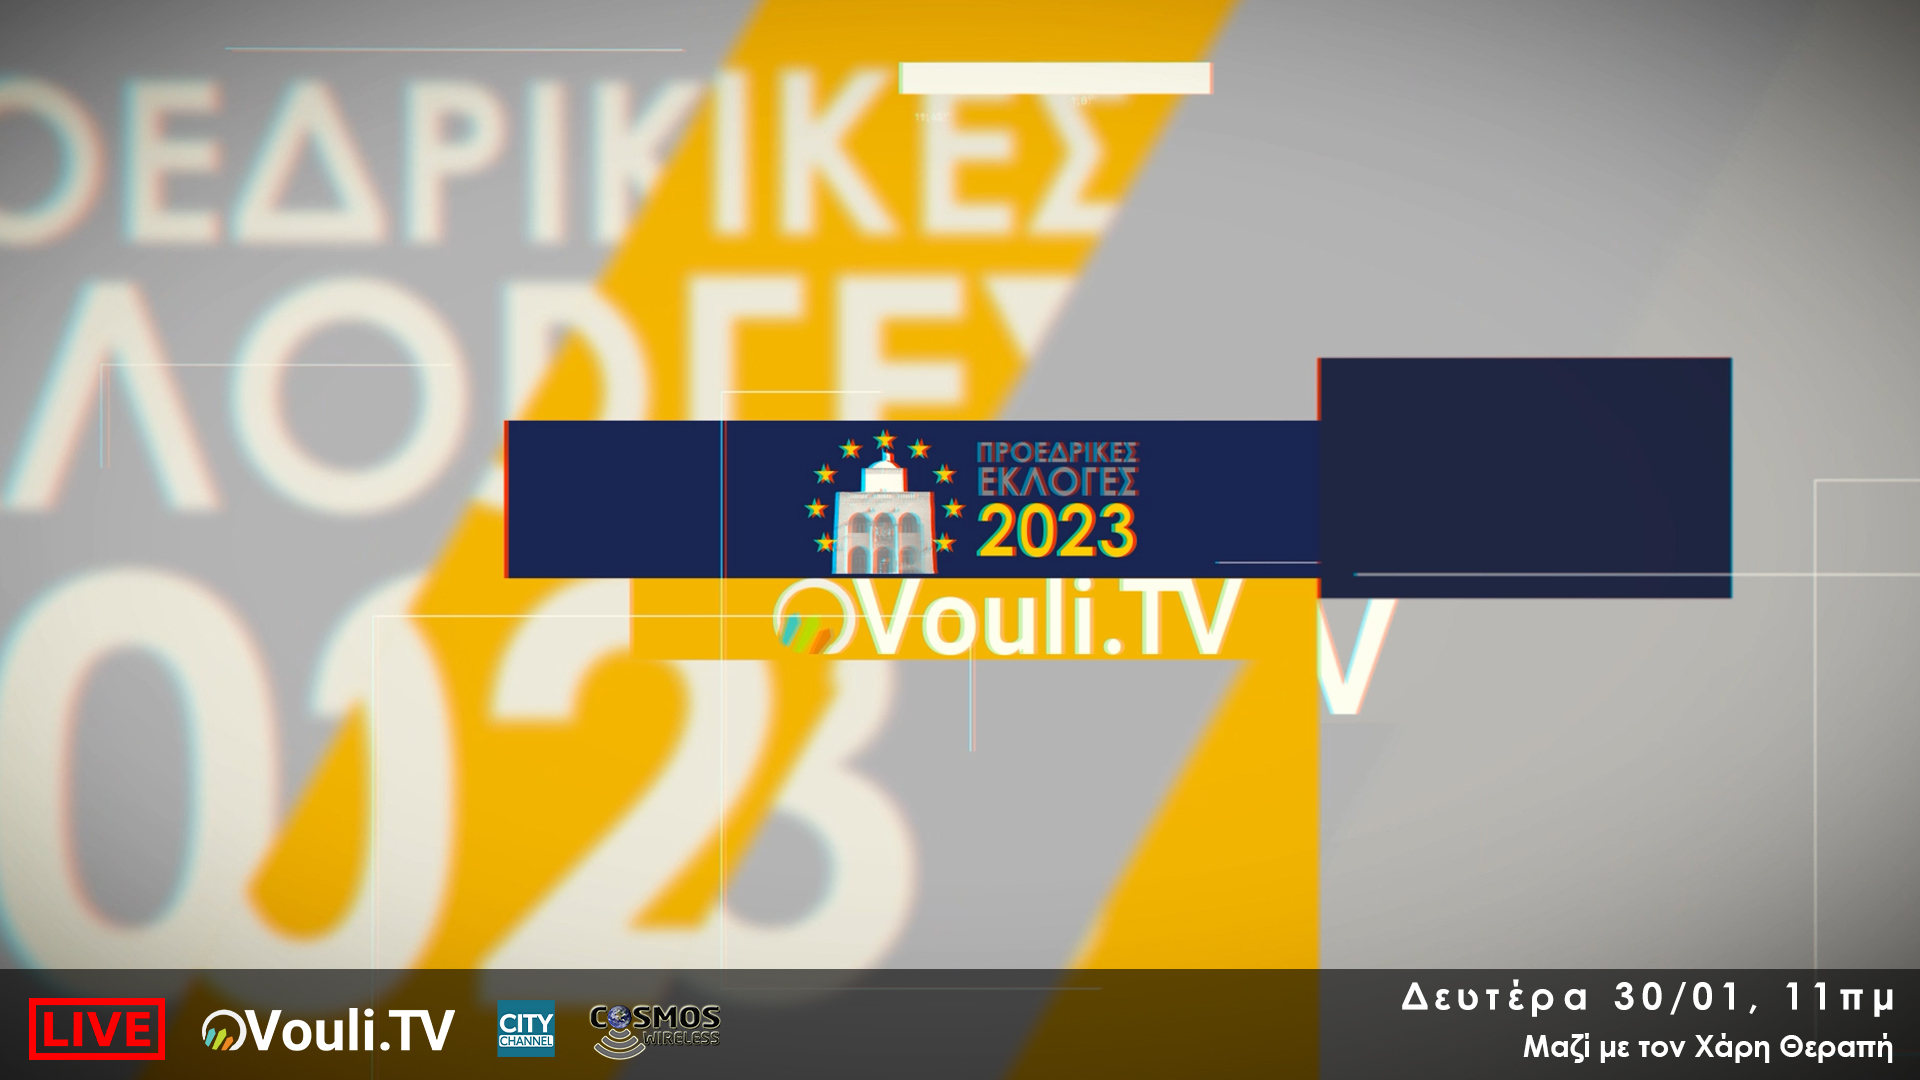 Προεδρικές Εκλογές 2023 - Choose4Cyprus | Πόσο συμφωνείτε με τους υποψήφιους για τις Προεδρικές; | Δευτέρα 30/01, 11πμ